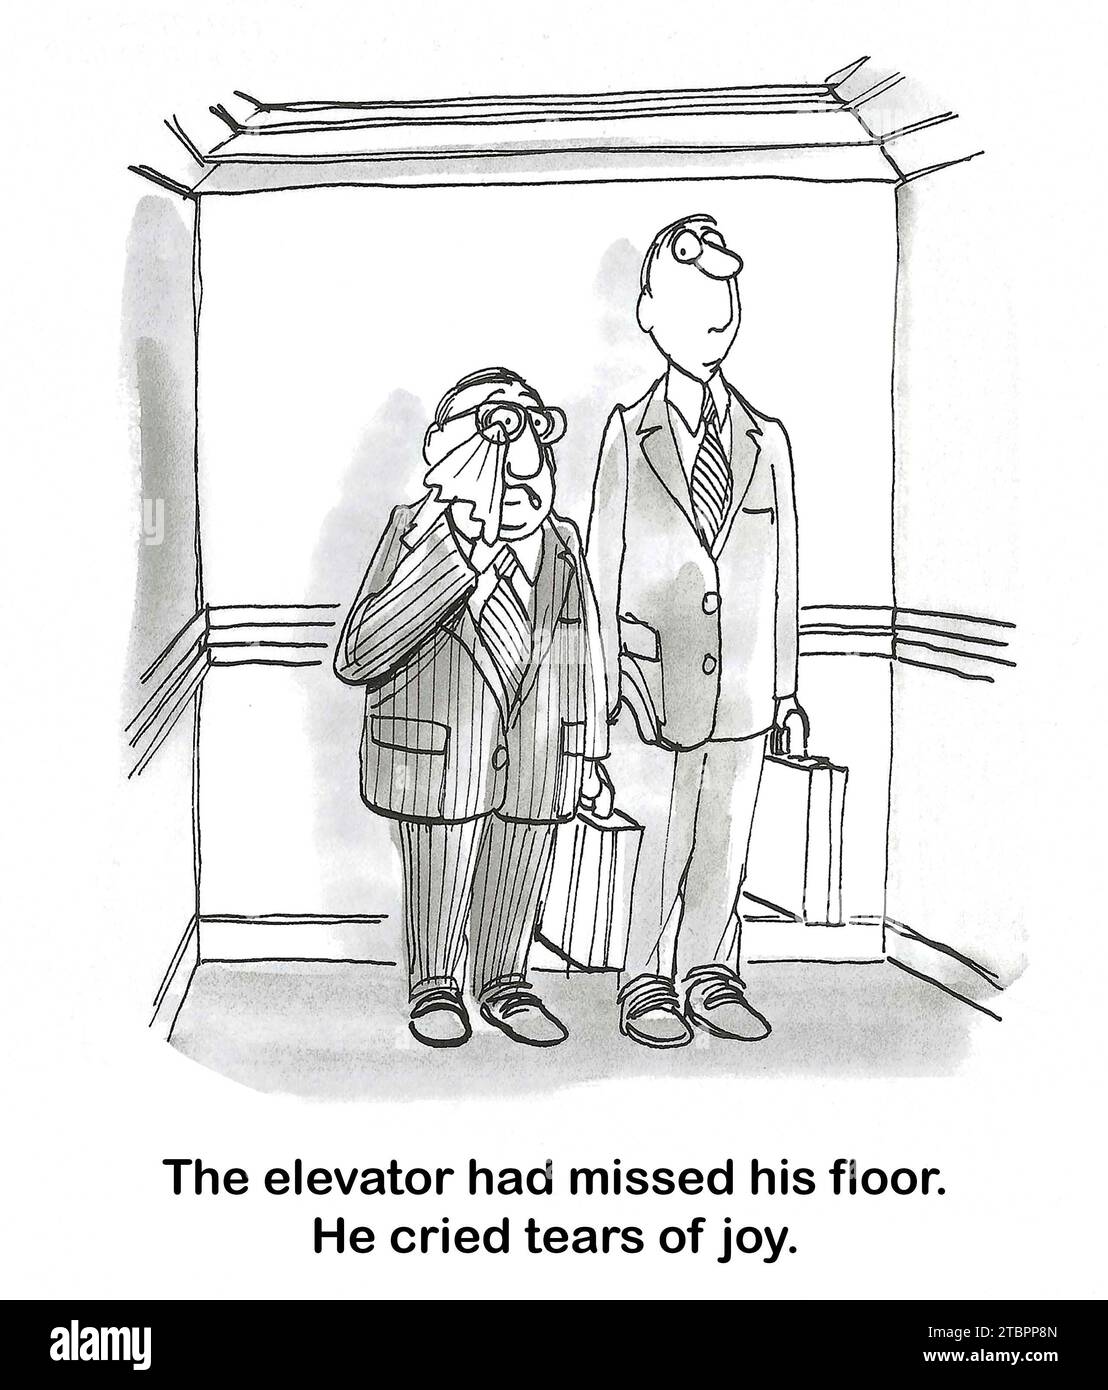 Schwarzweiß-Cartoon eines weinenden männlichen Profis - er hat Tränen vor Freude, weil der Aufzug seinen Arbeitsplatz verpasst hat. Stockfoto